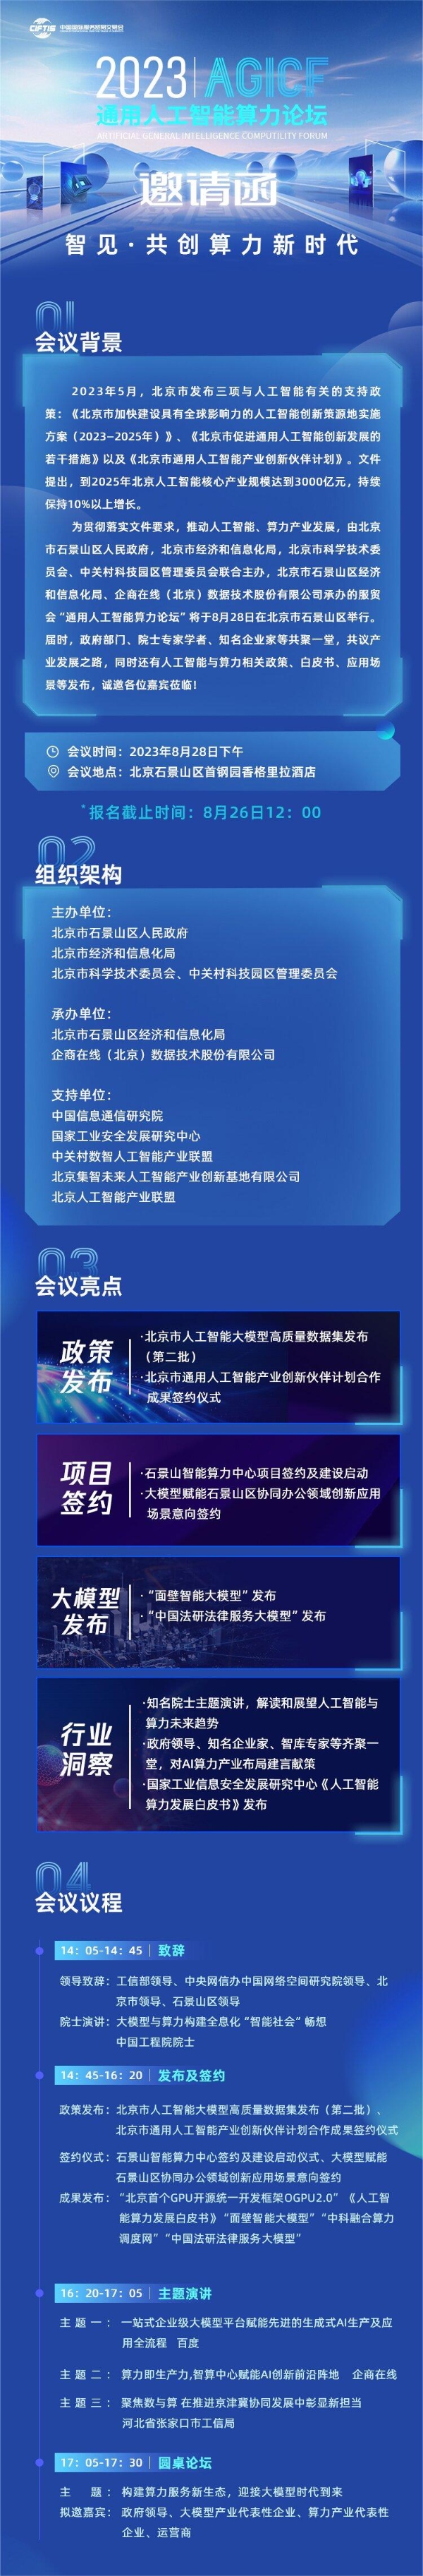  2023服贸会“通用人工智能算力论坛”将于8月28日在京举办